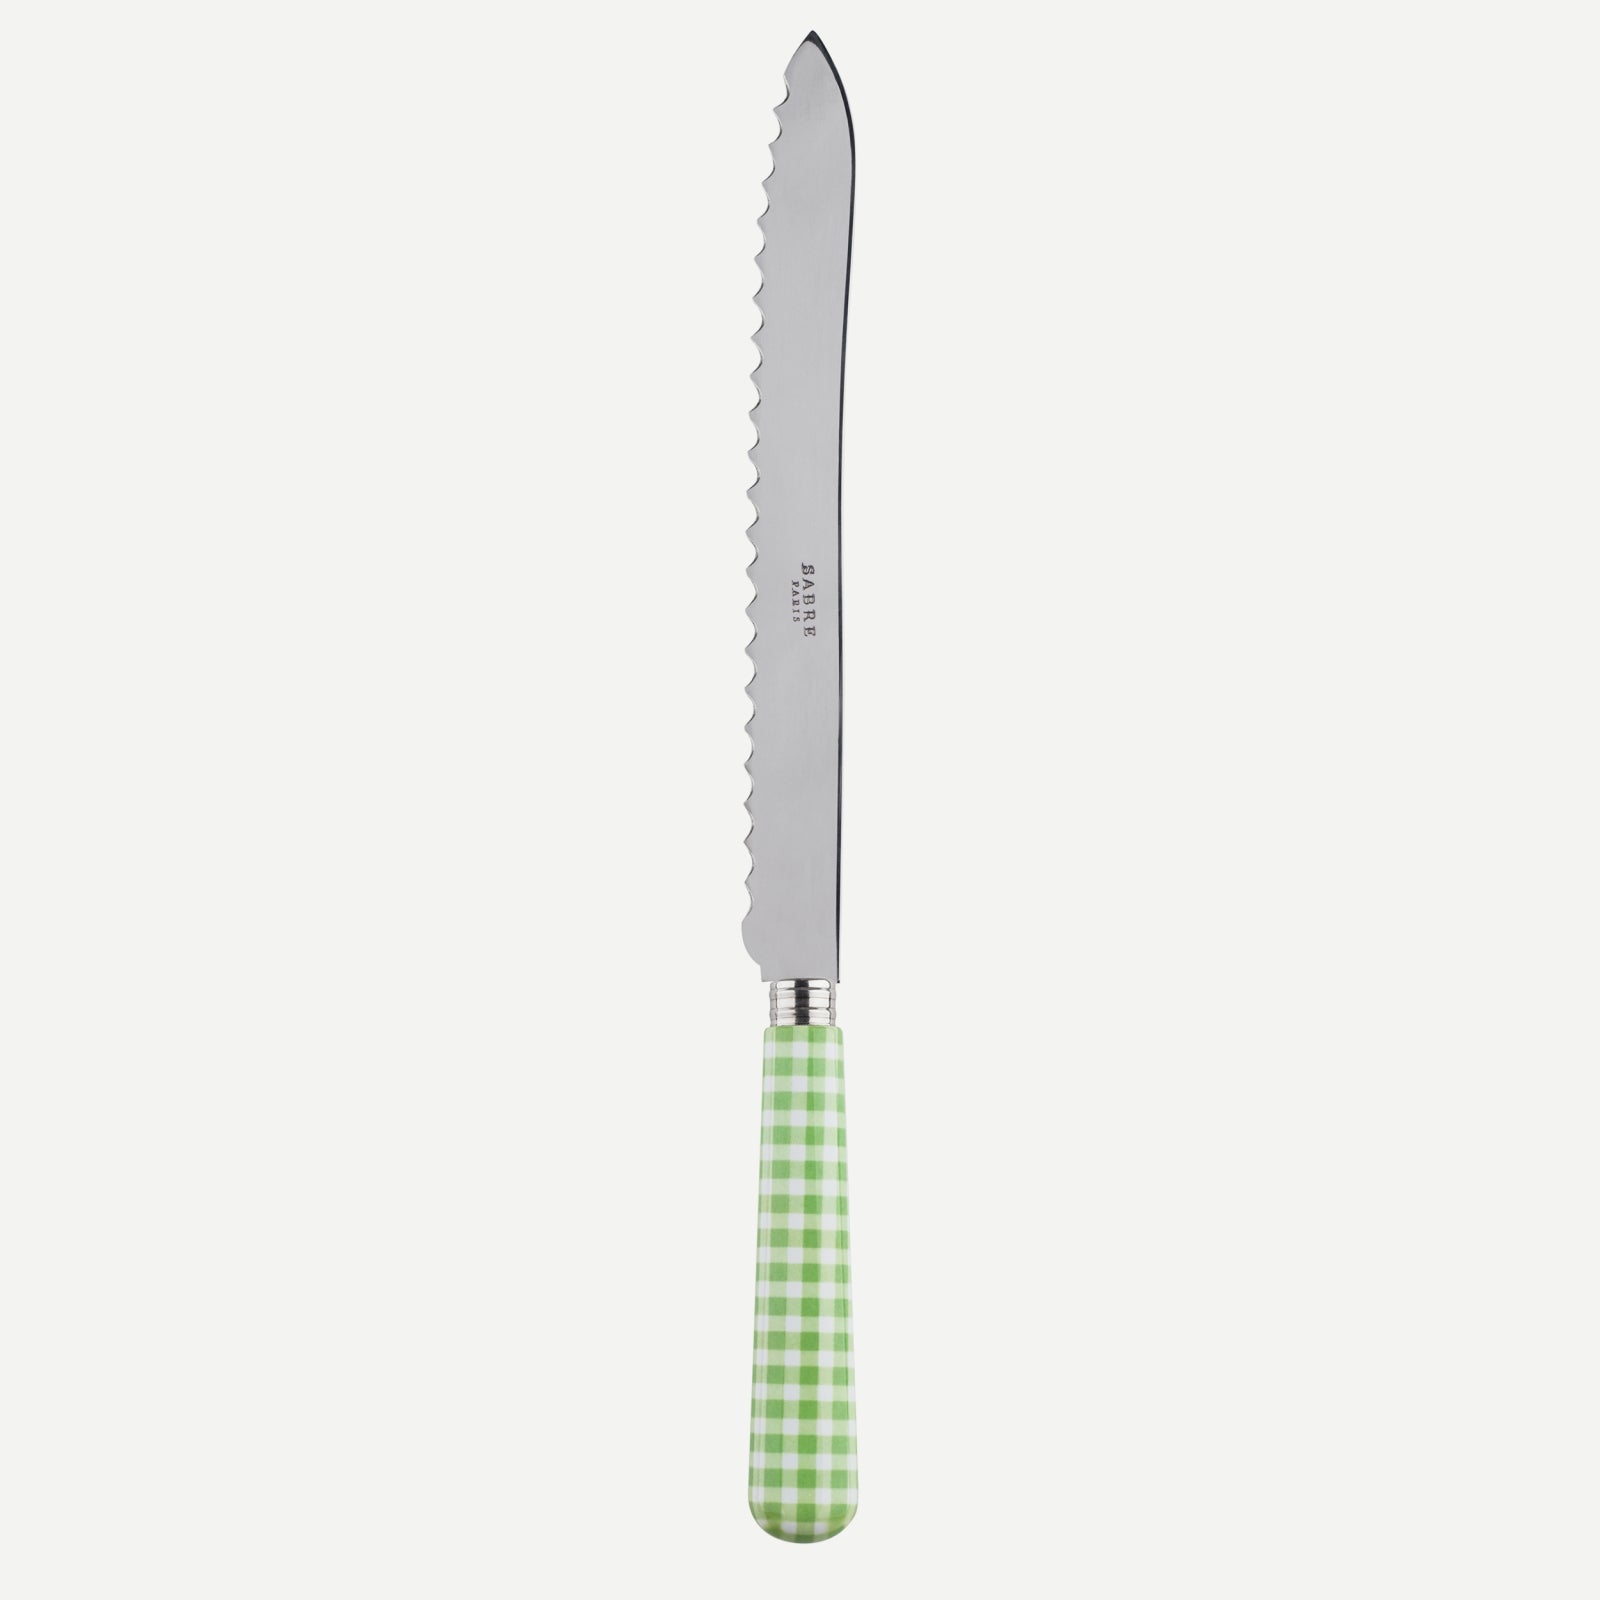 Bread knife - Gingham - Garden green